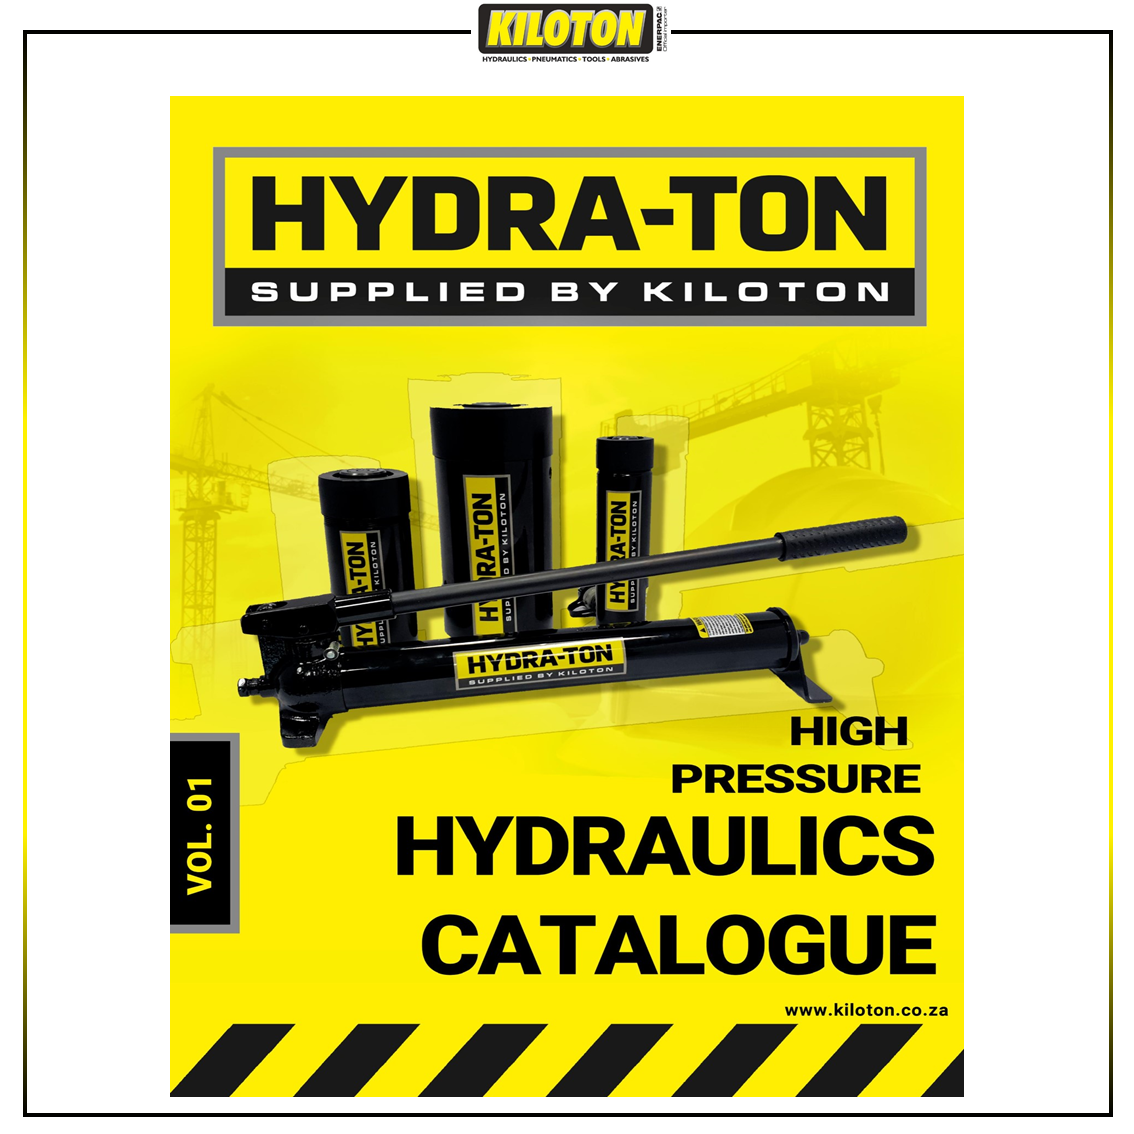 KILATON - Hydra-Ton-Catalogue Catalogue